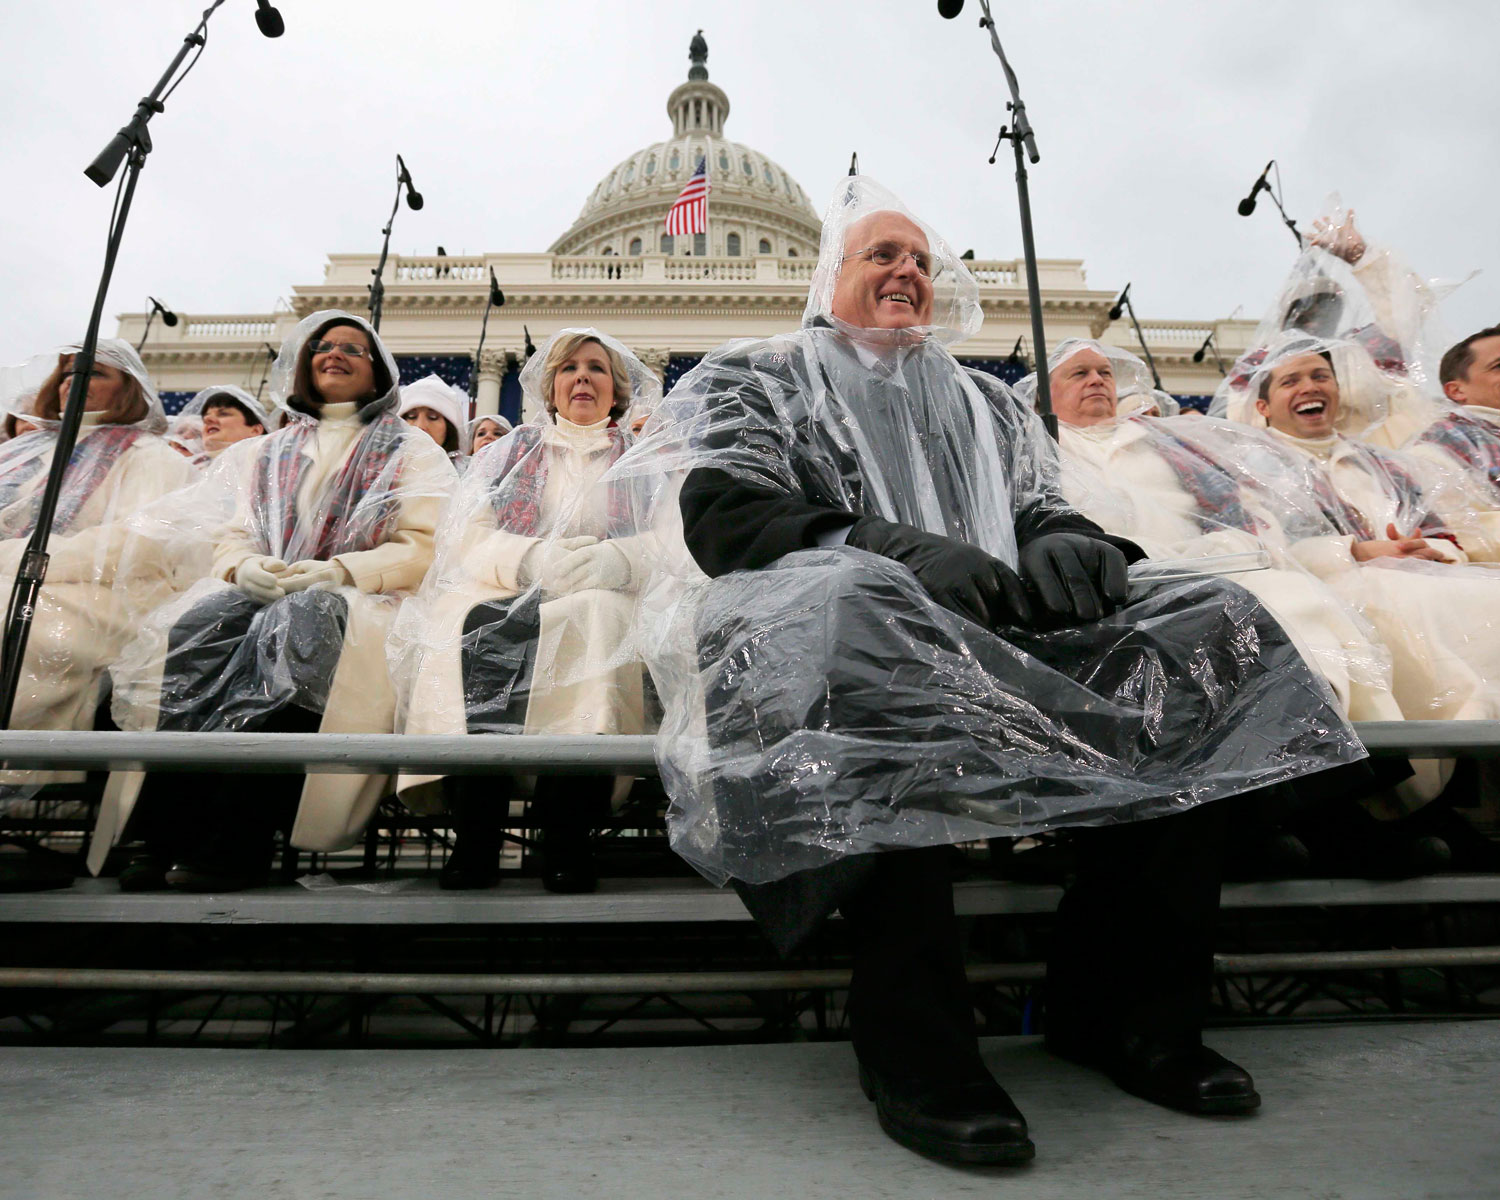 Miembros del coro de la Iglesia Mormona "Tabernacle" esperan el comienzo de la ceremonia. | Foto: Brian Snyder / Reuters